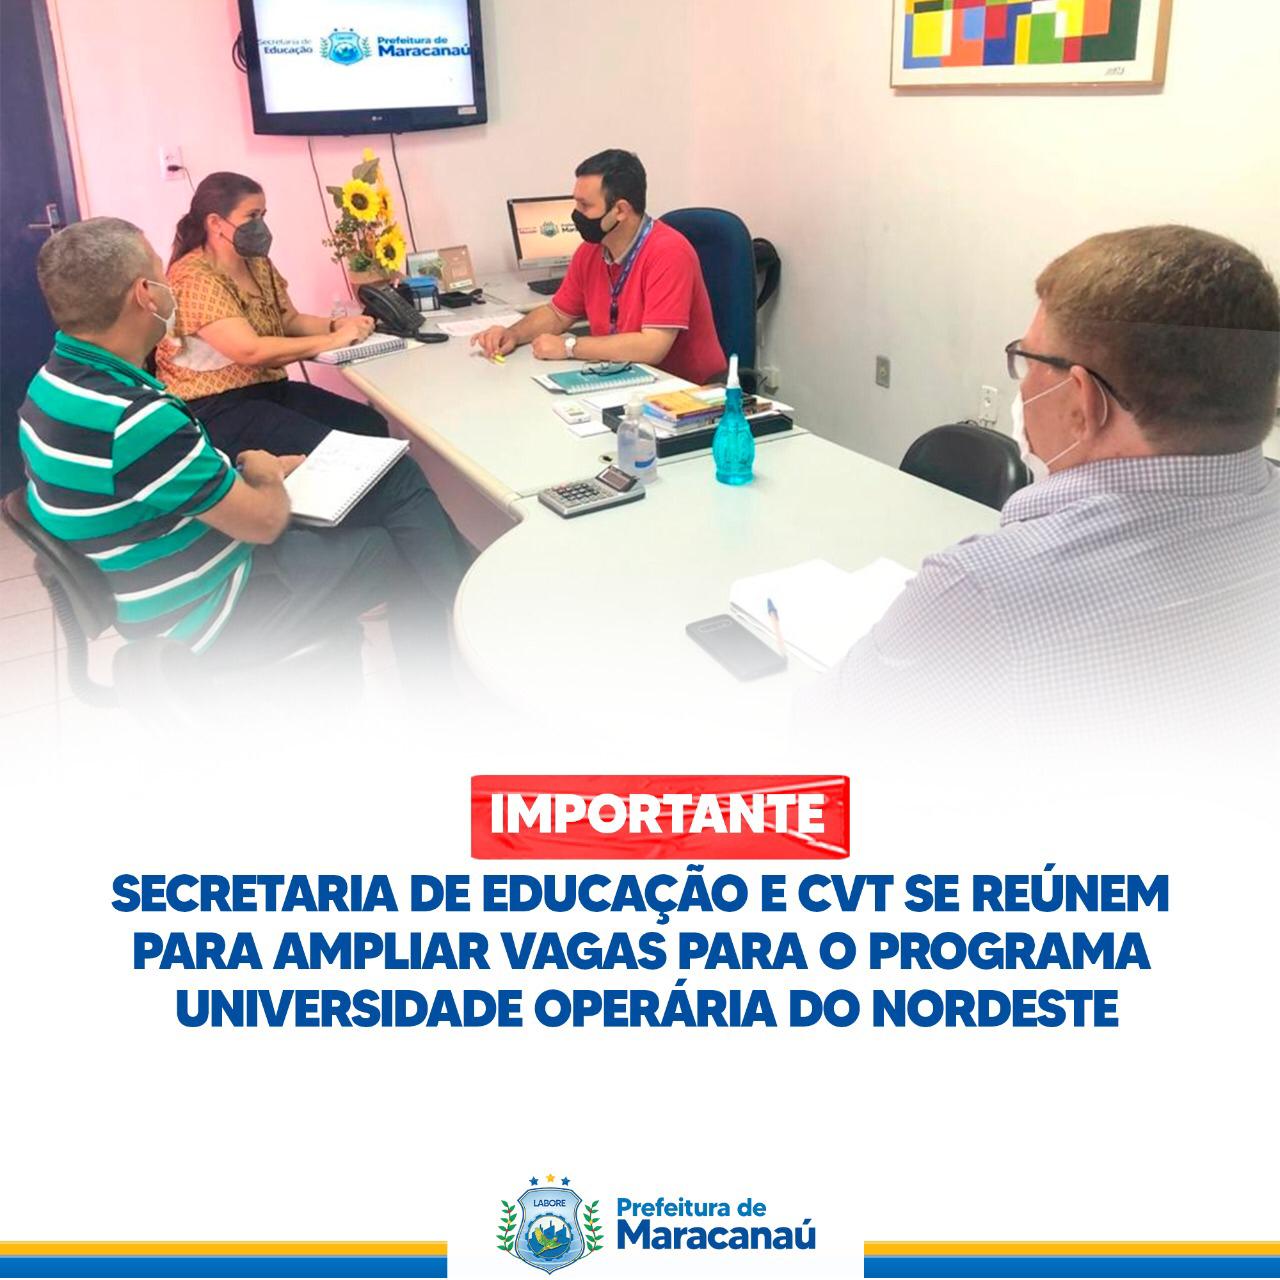 You are currently viewing Secretaria de Educação e CVT se reúnem para ampliar vagas para o Programa Universidade Operária do Nordeste